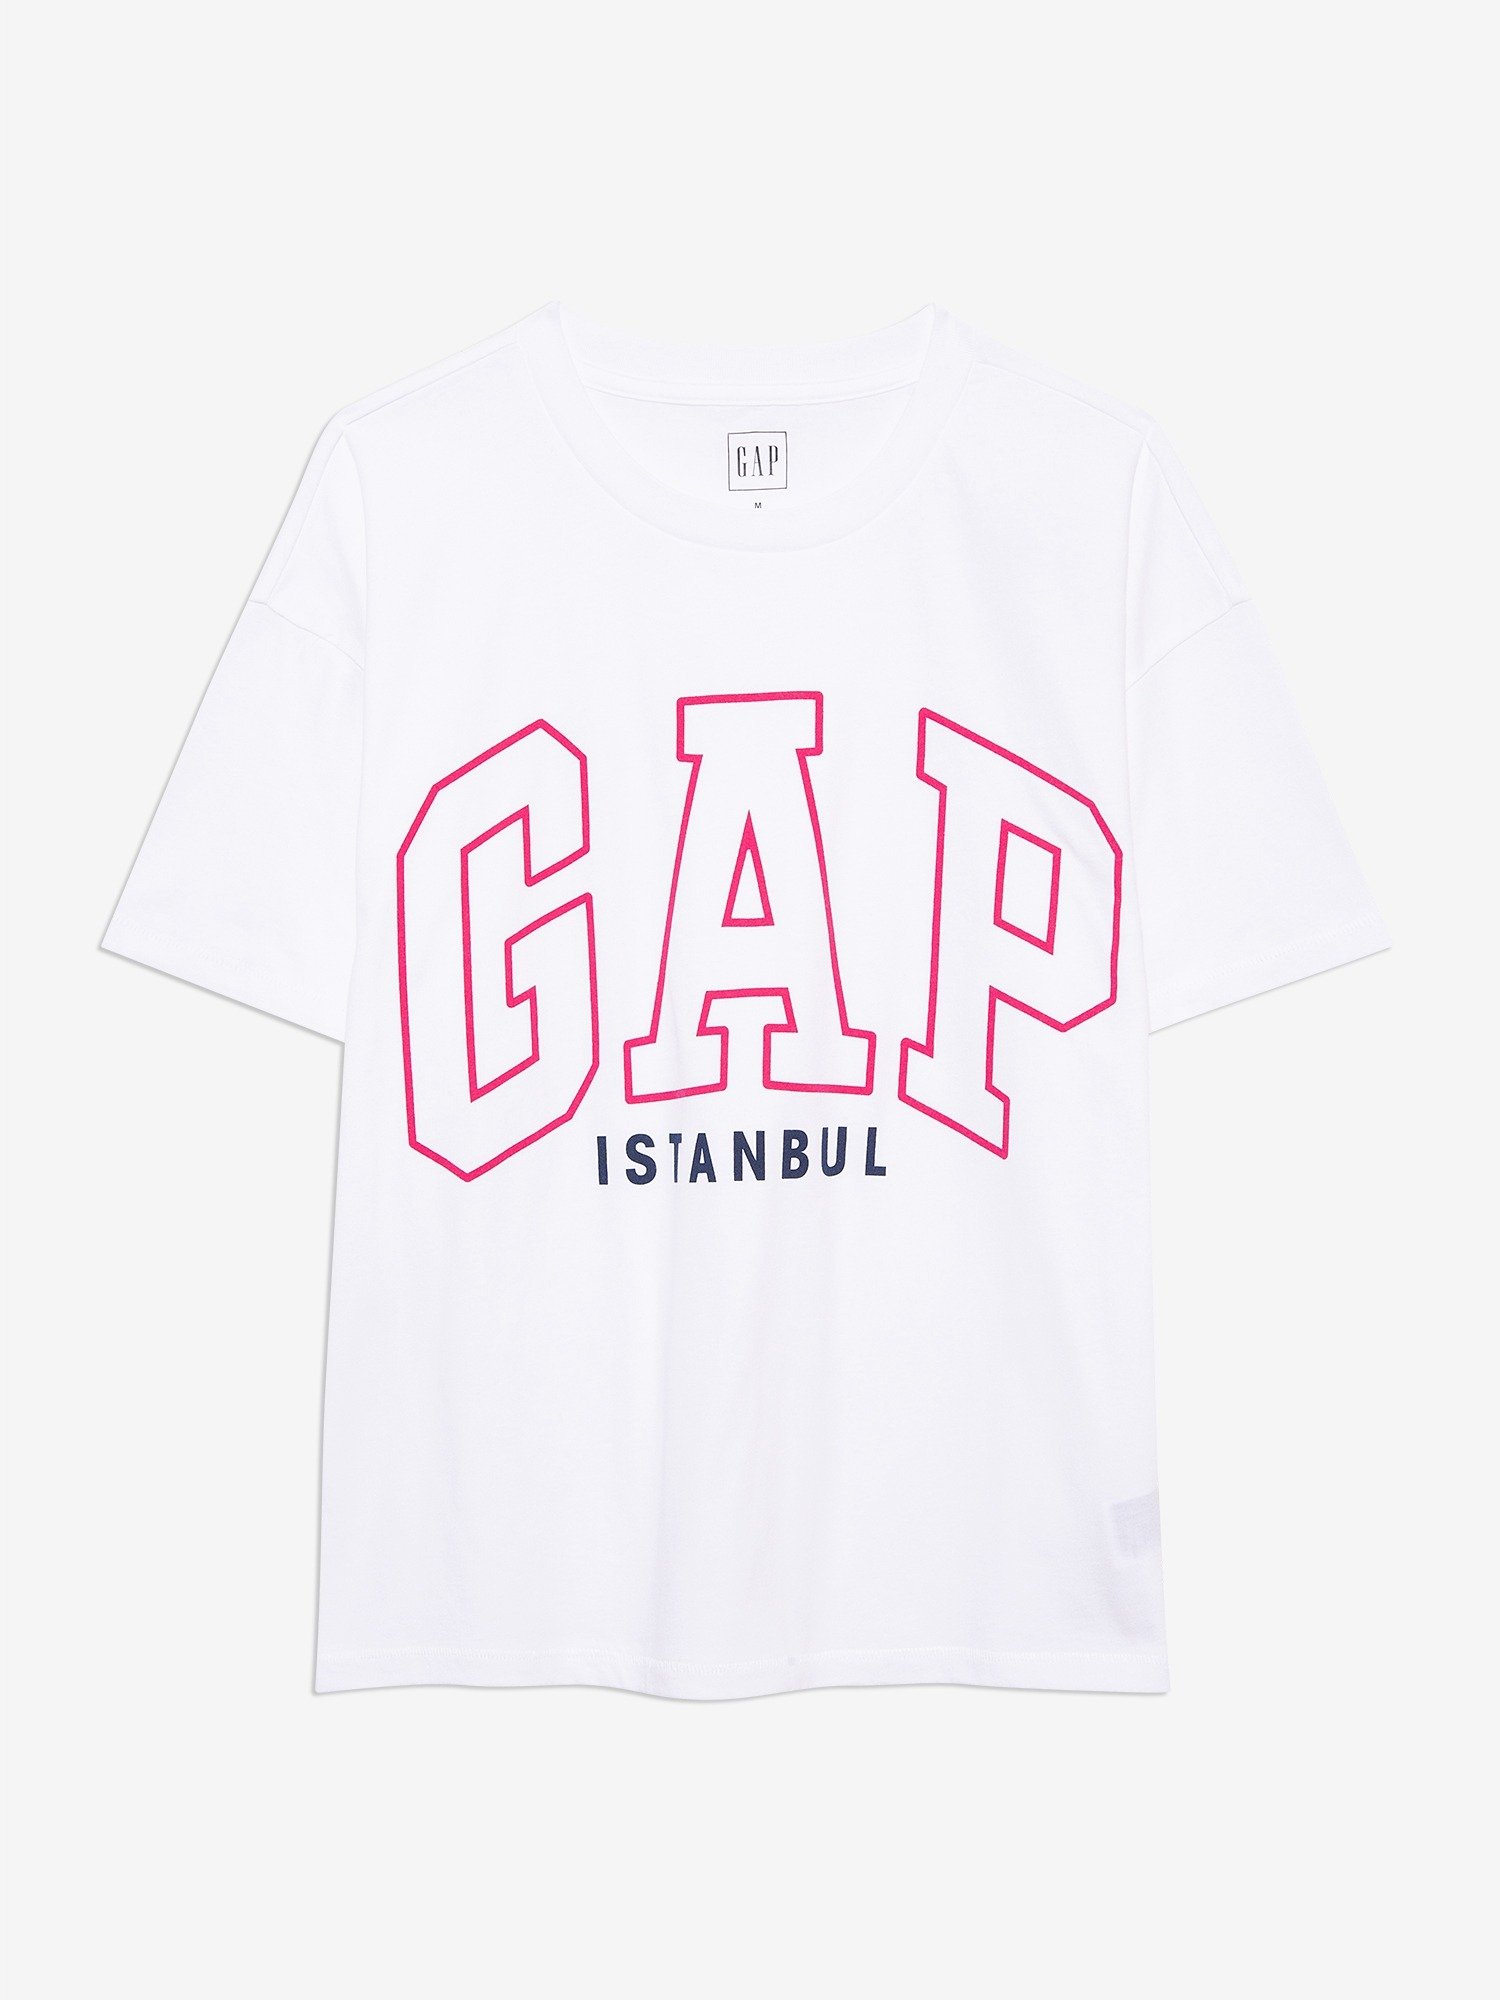 Gap Logo İstanbul T-Shirt product image